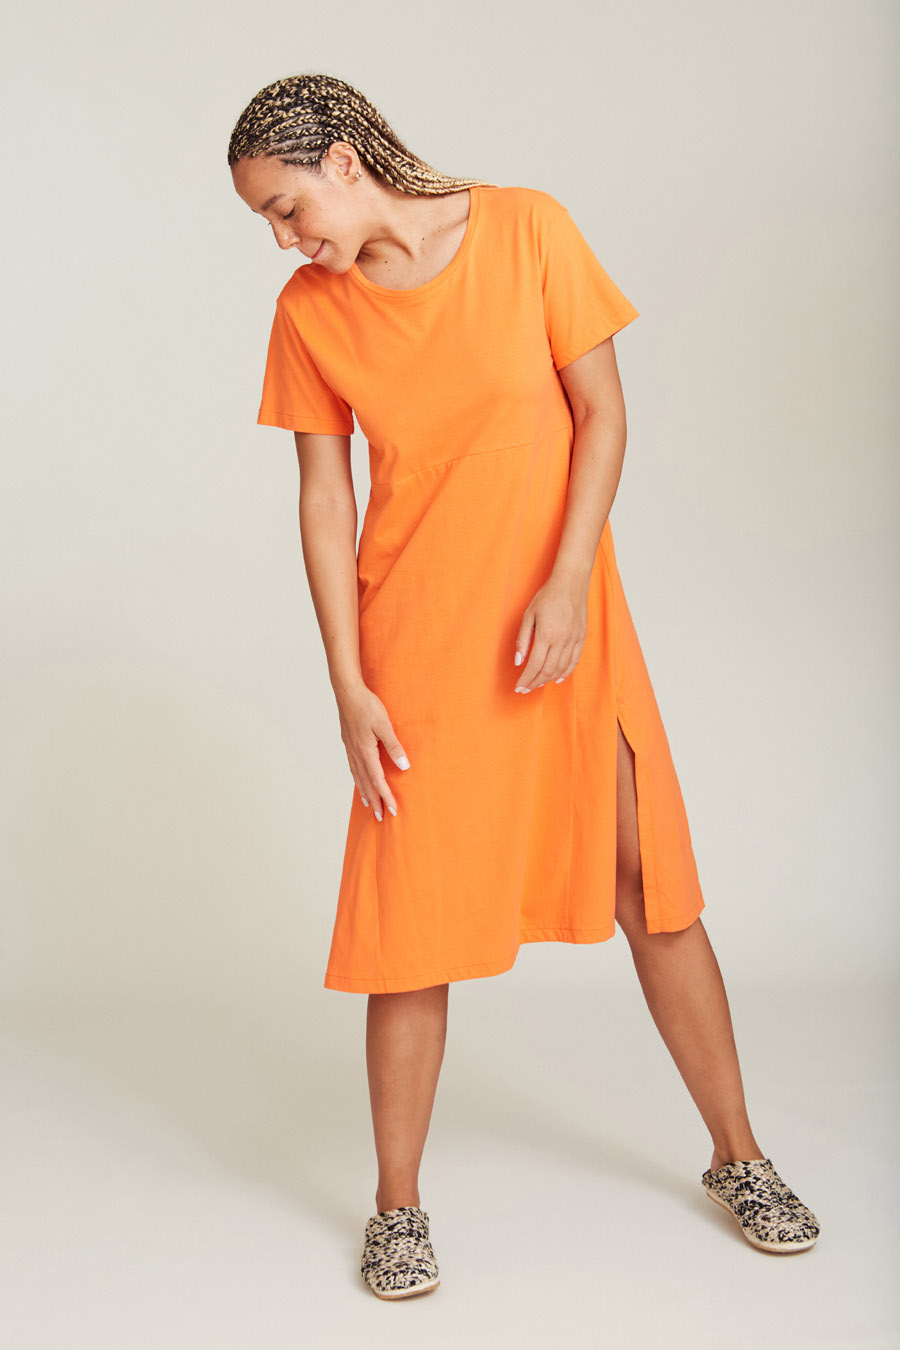 Suite13Lab - CRETA DRESS - Orange